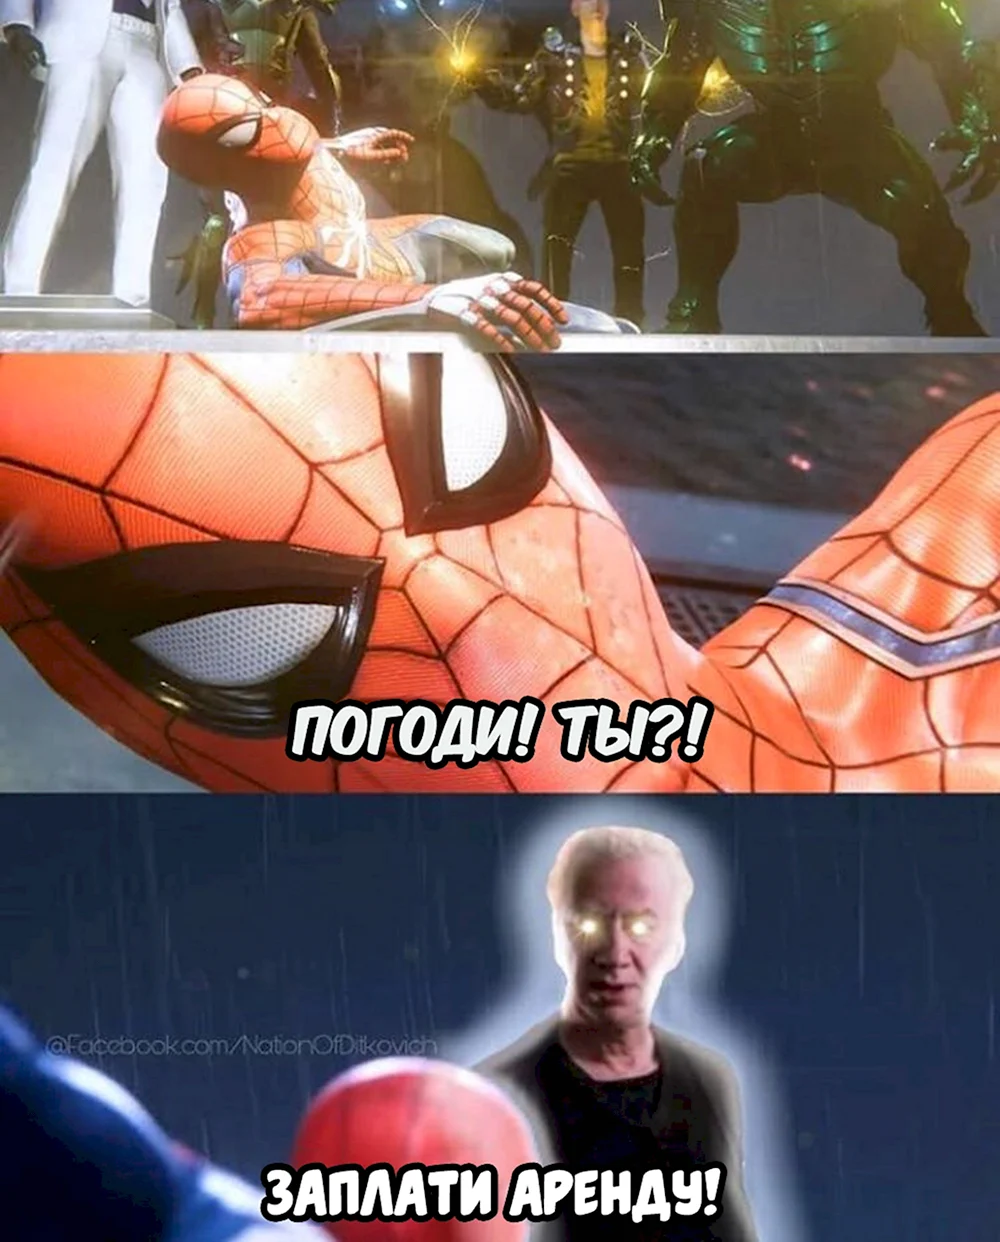 Мистер Диткович человек паук 4